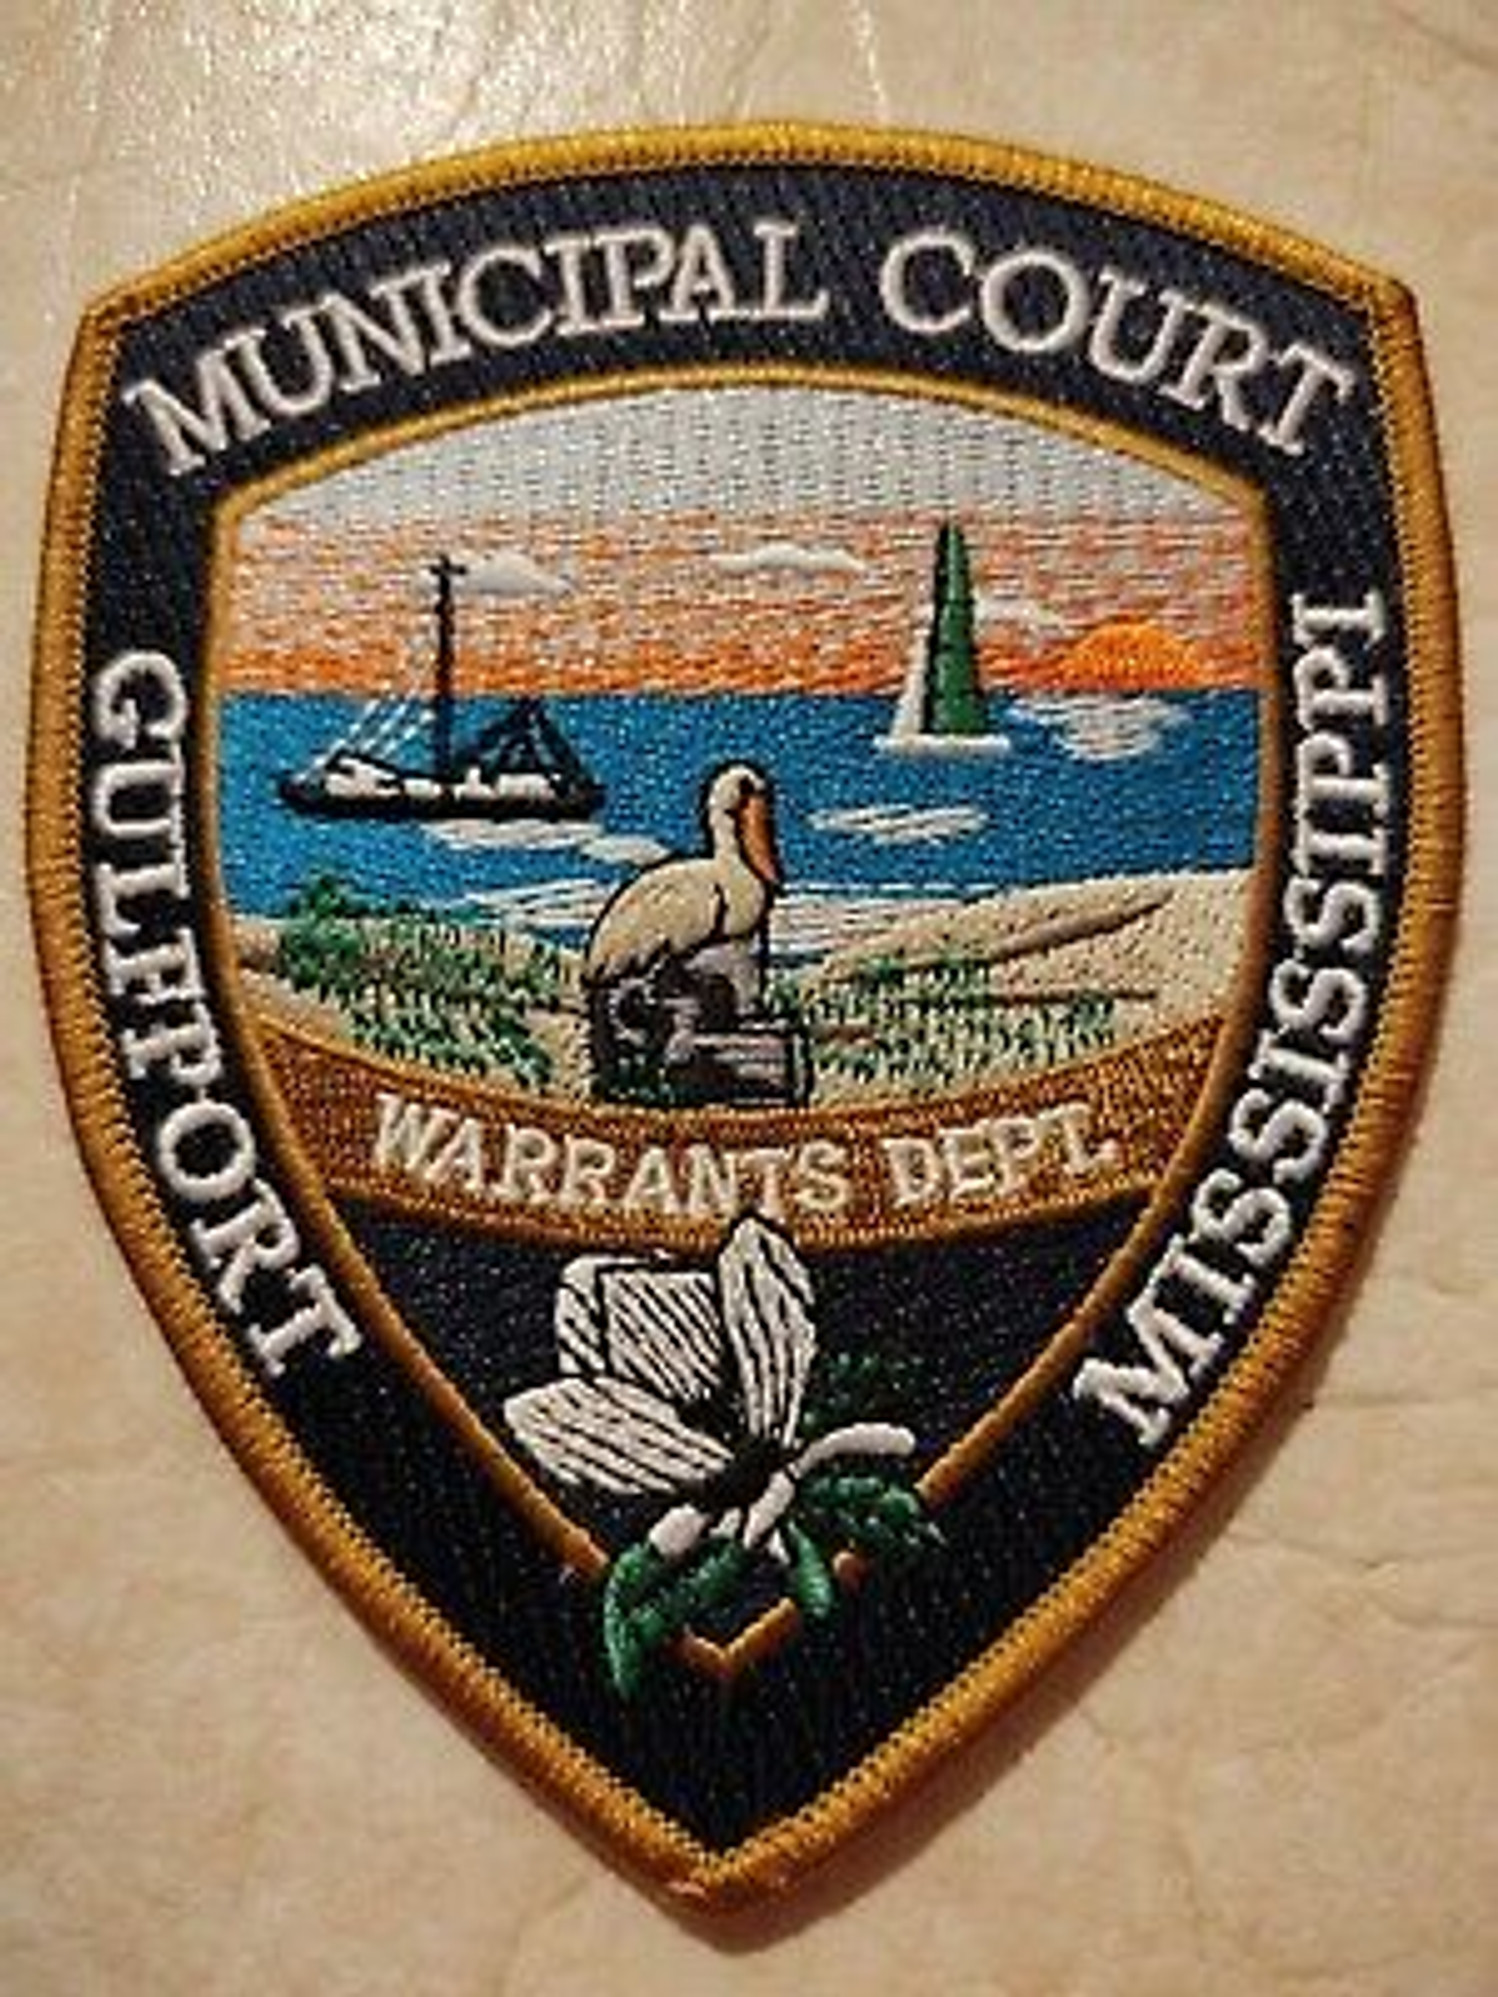 Municipal Court Gulfport MI Police Patch